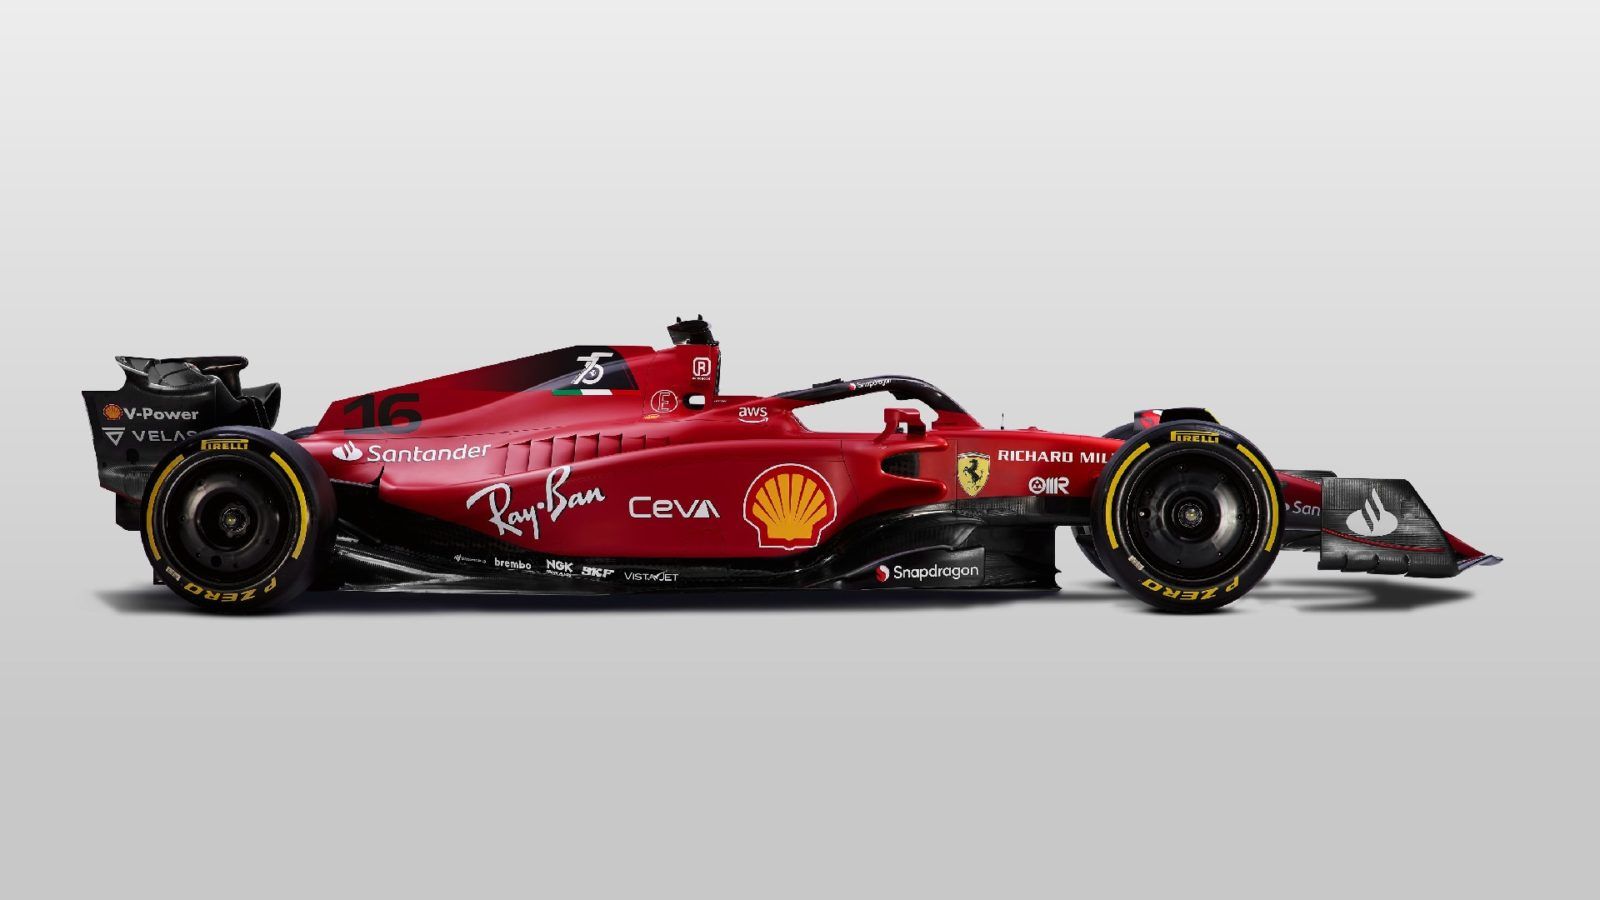 Ferrari unveils F1-75 car ahead of 2022 Formula 1 season